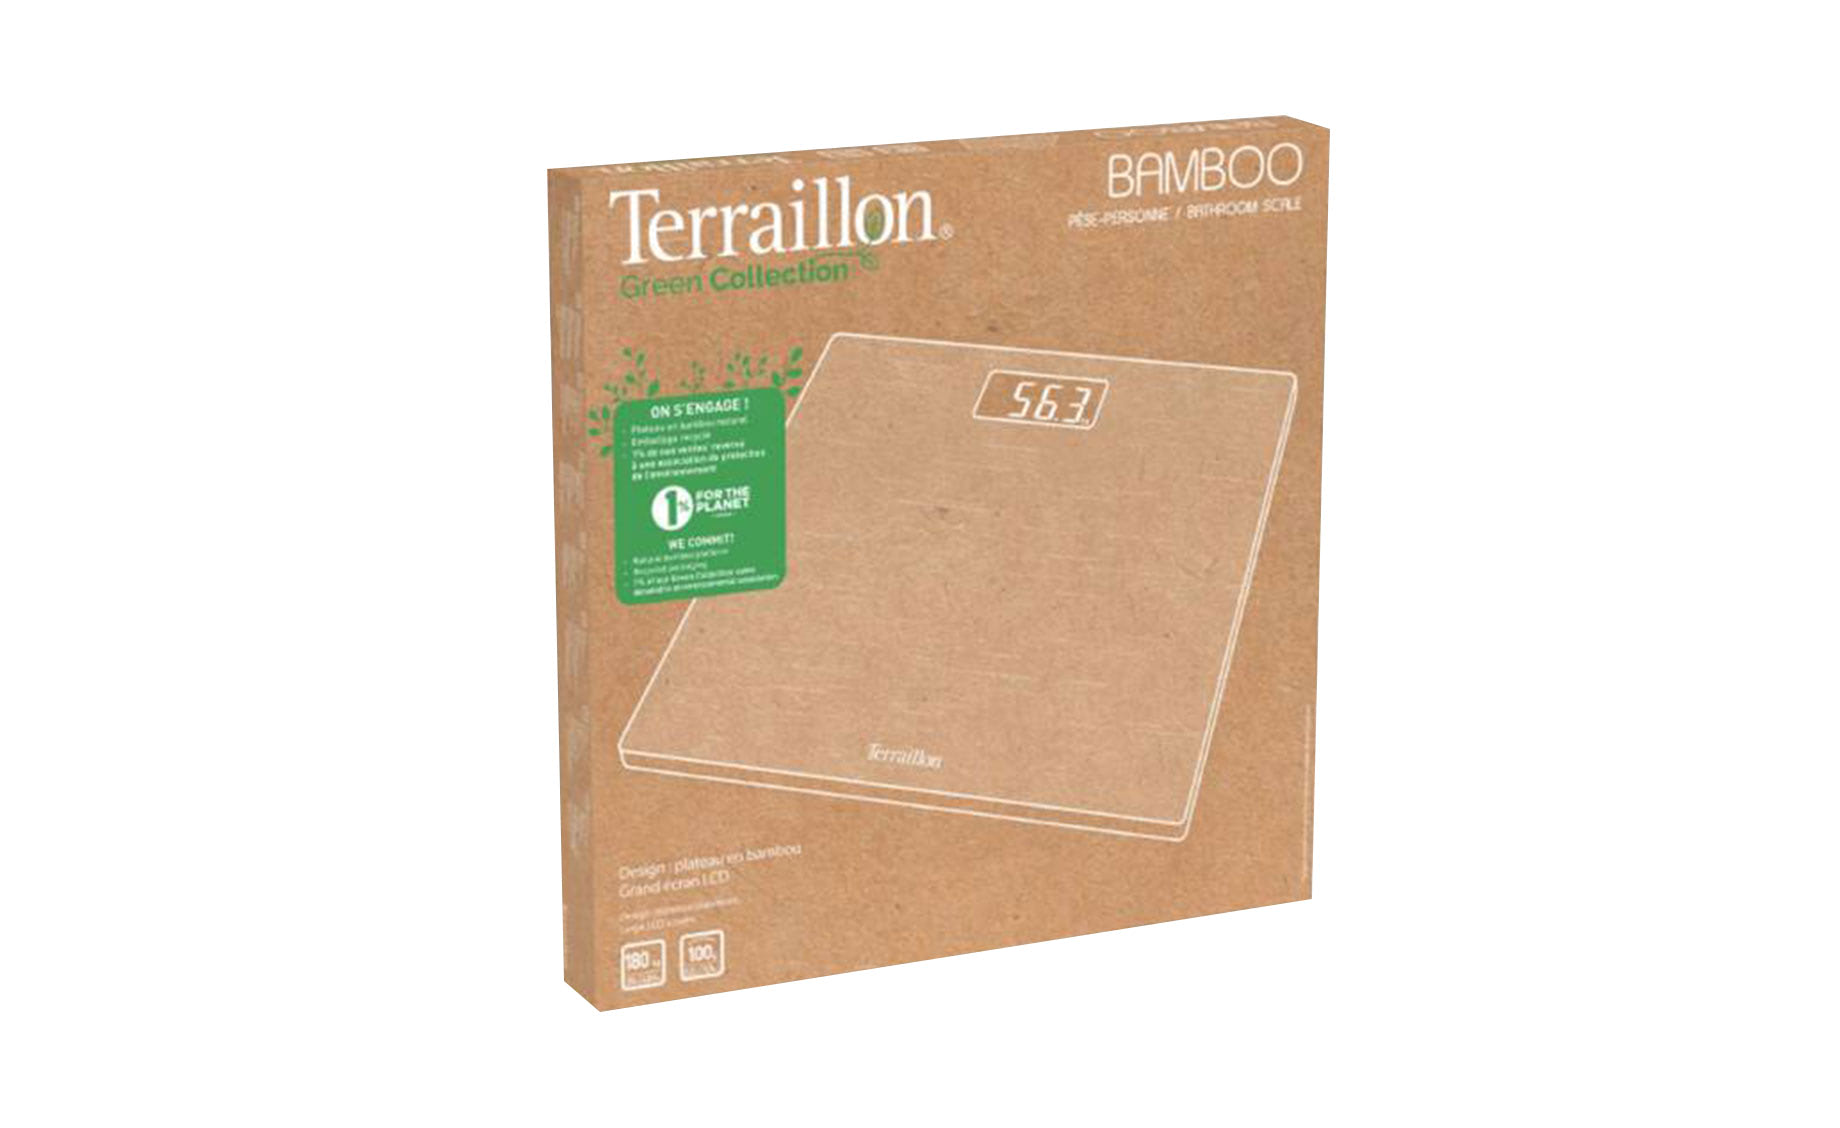 Terraillon TR14824 BAMBOO SCALE telesna vaga